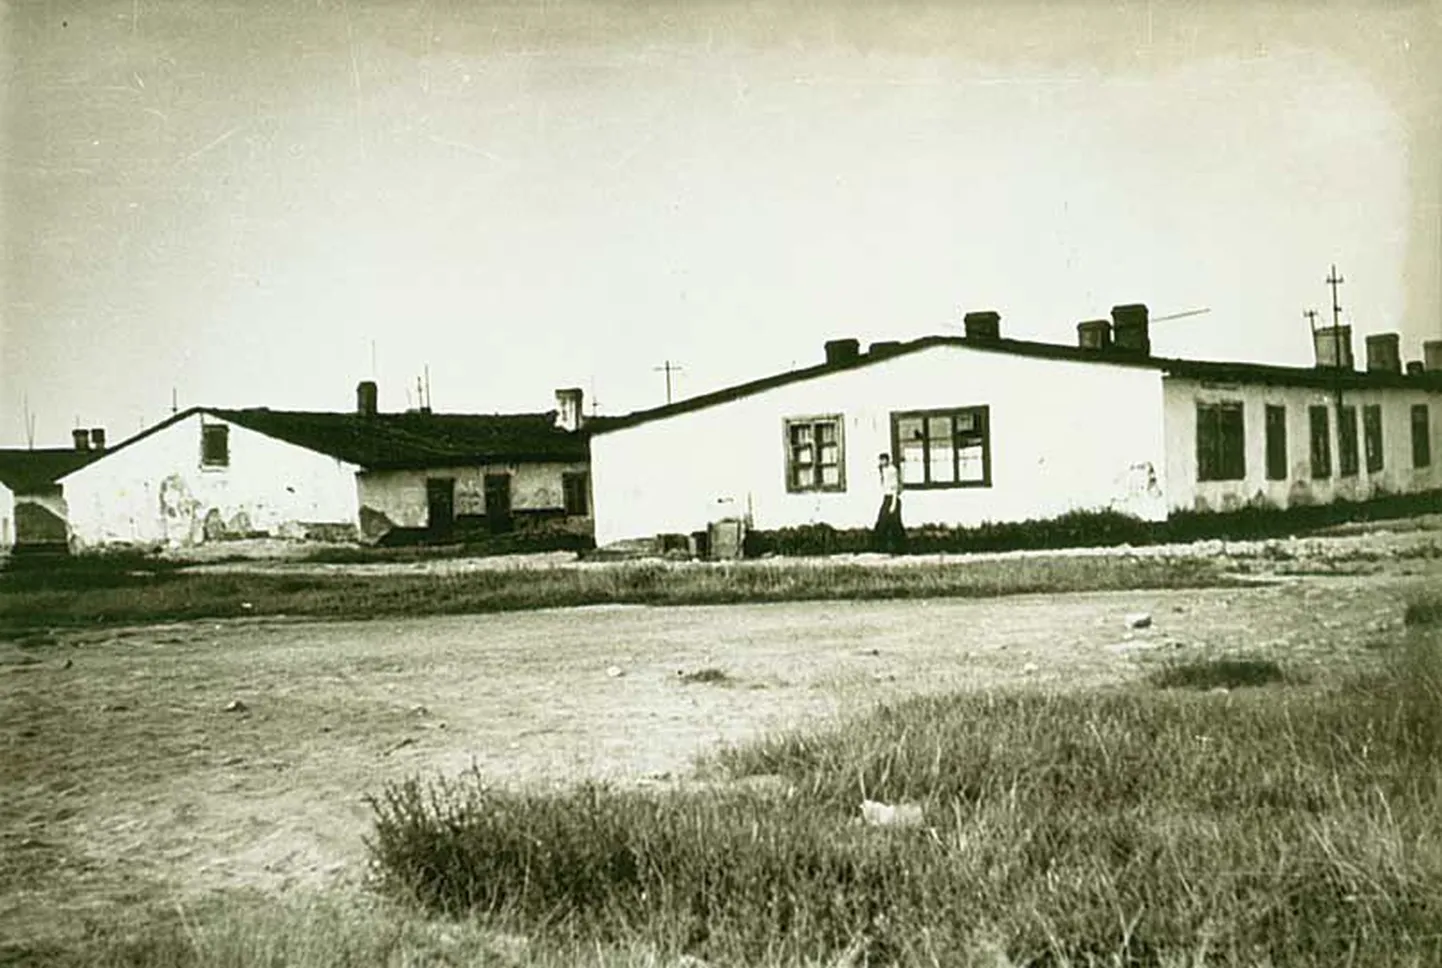 Endine sõjavangilaager 1955. aastal, kui selle barakid ja abihooned olid muudetud elumajadeks. Kohaliku legendi järgi pandi neisse majadesse elama selle laagri kunagised valvurid ja nende pered.